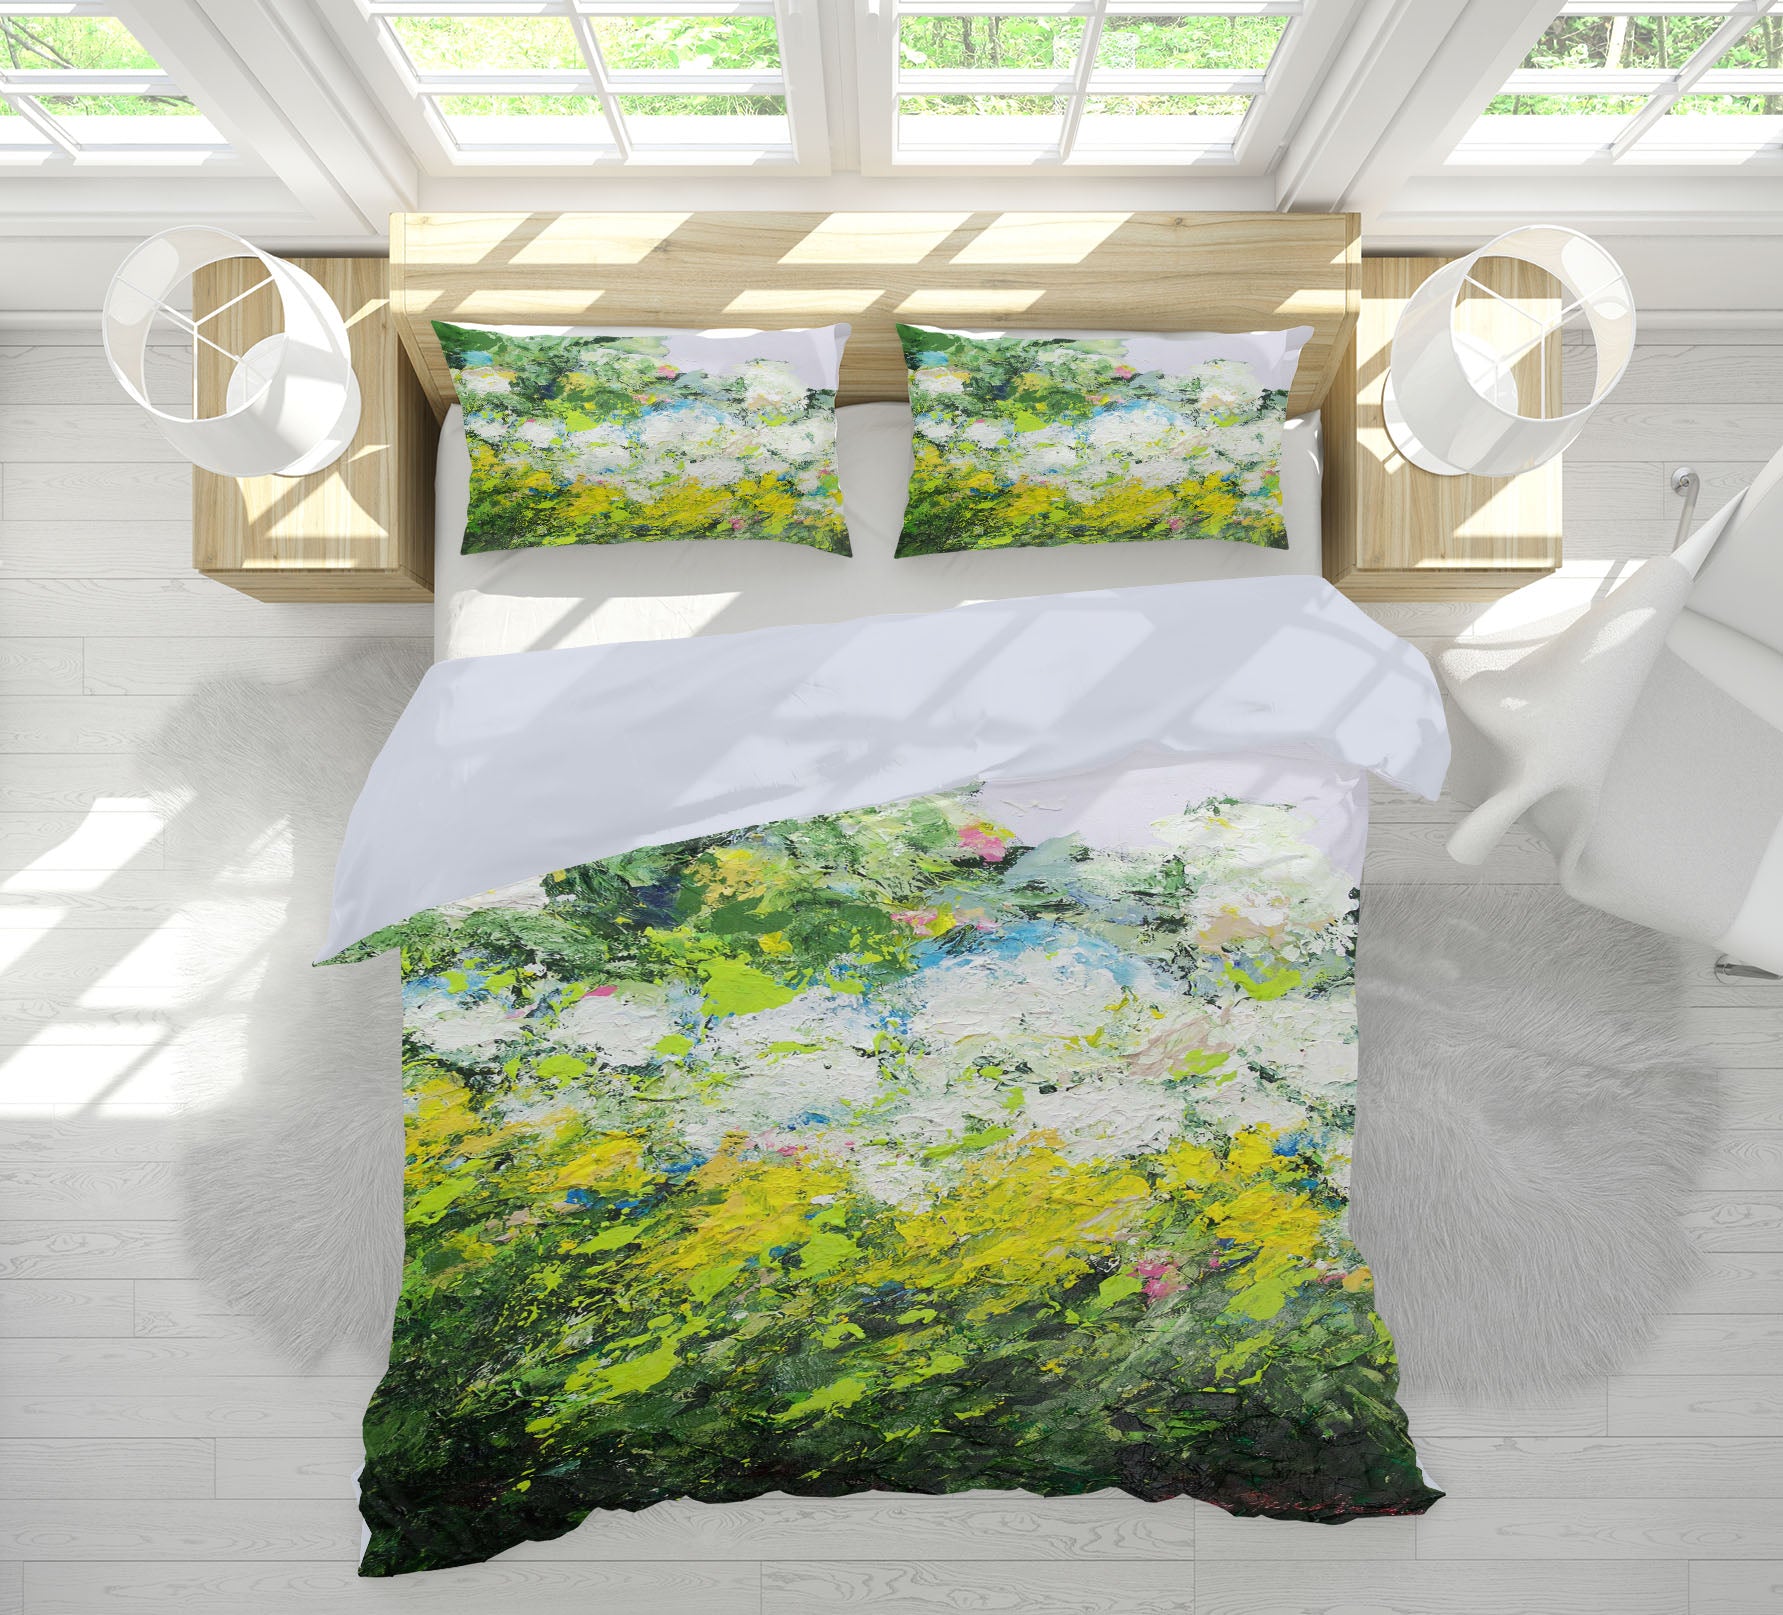 3D White Dandelion 1152 Allan P. Friedlander Bedding Bed Pillowcases Quilt